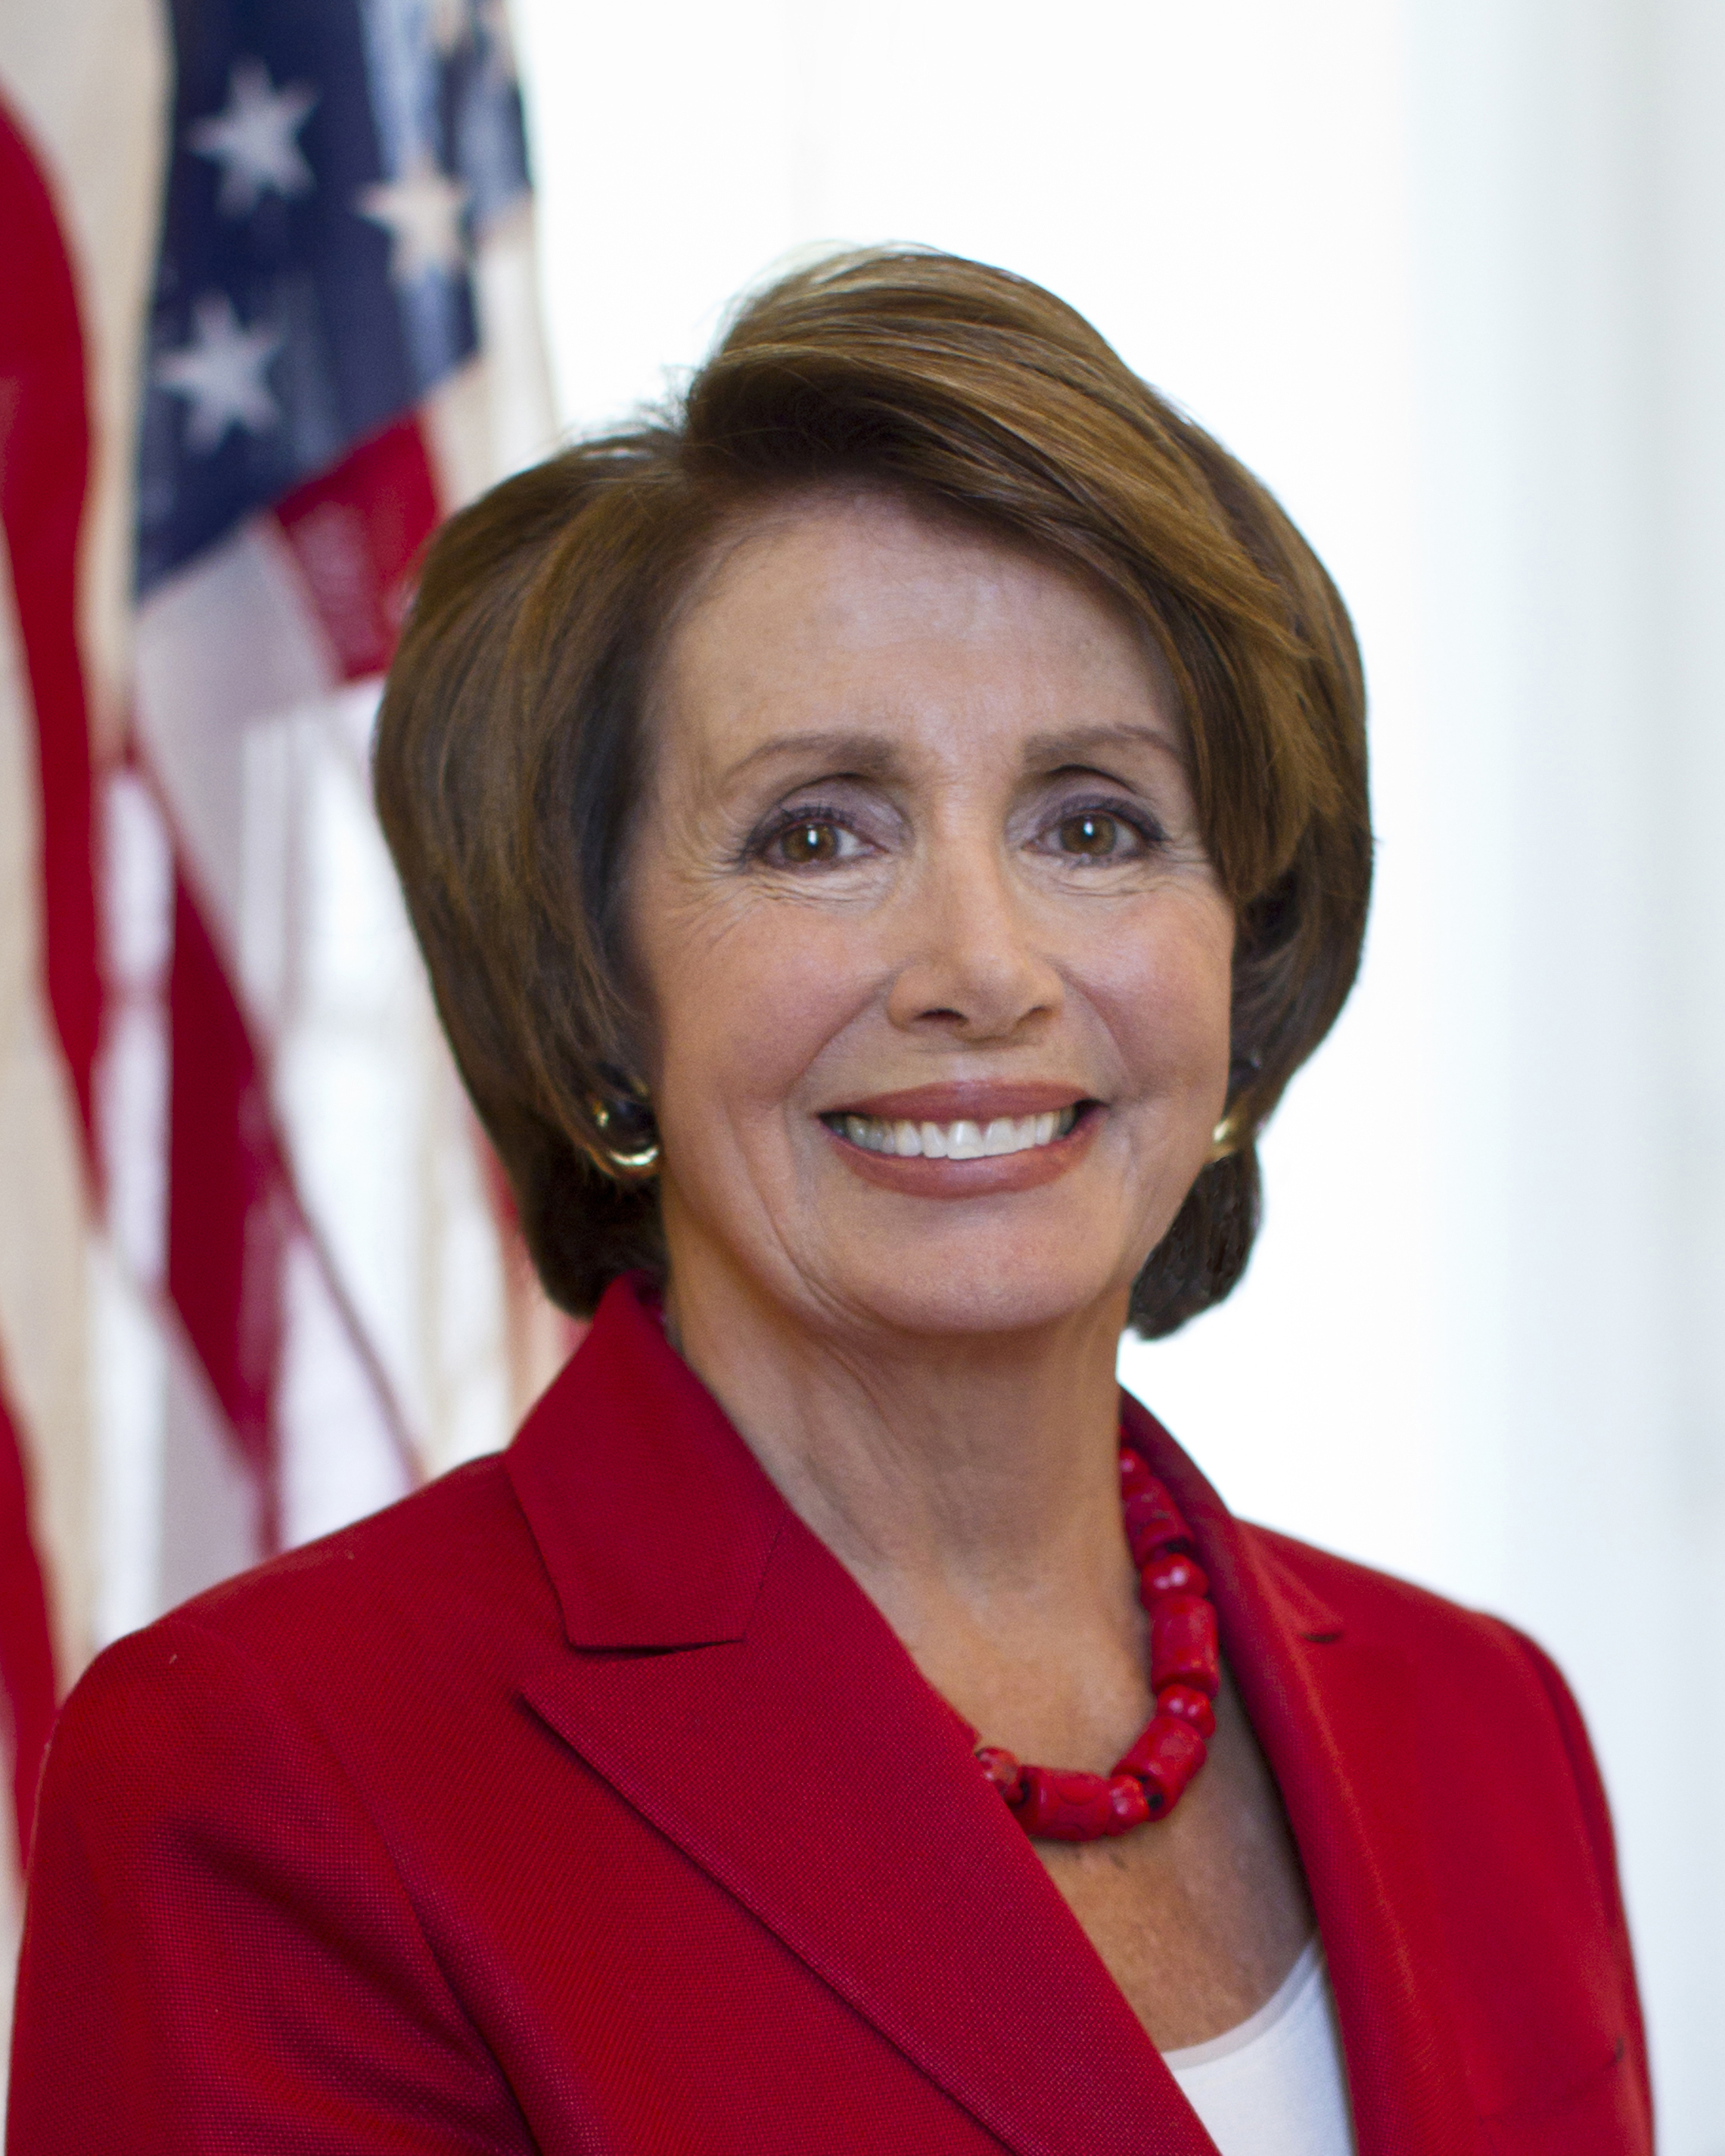 101 Nancy_Pelosi_2012.jpg